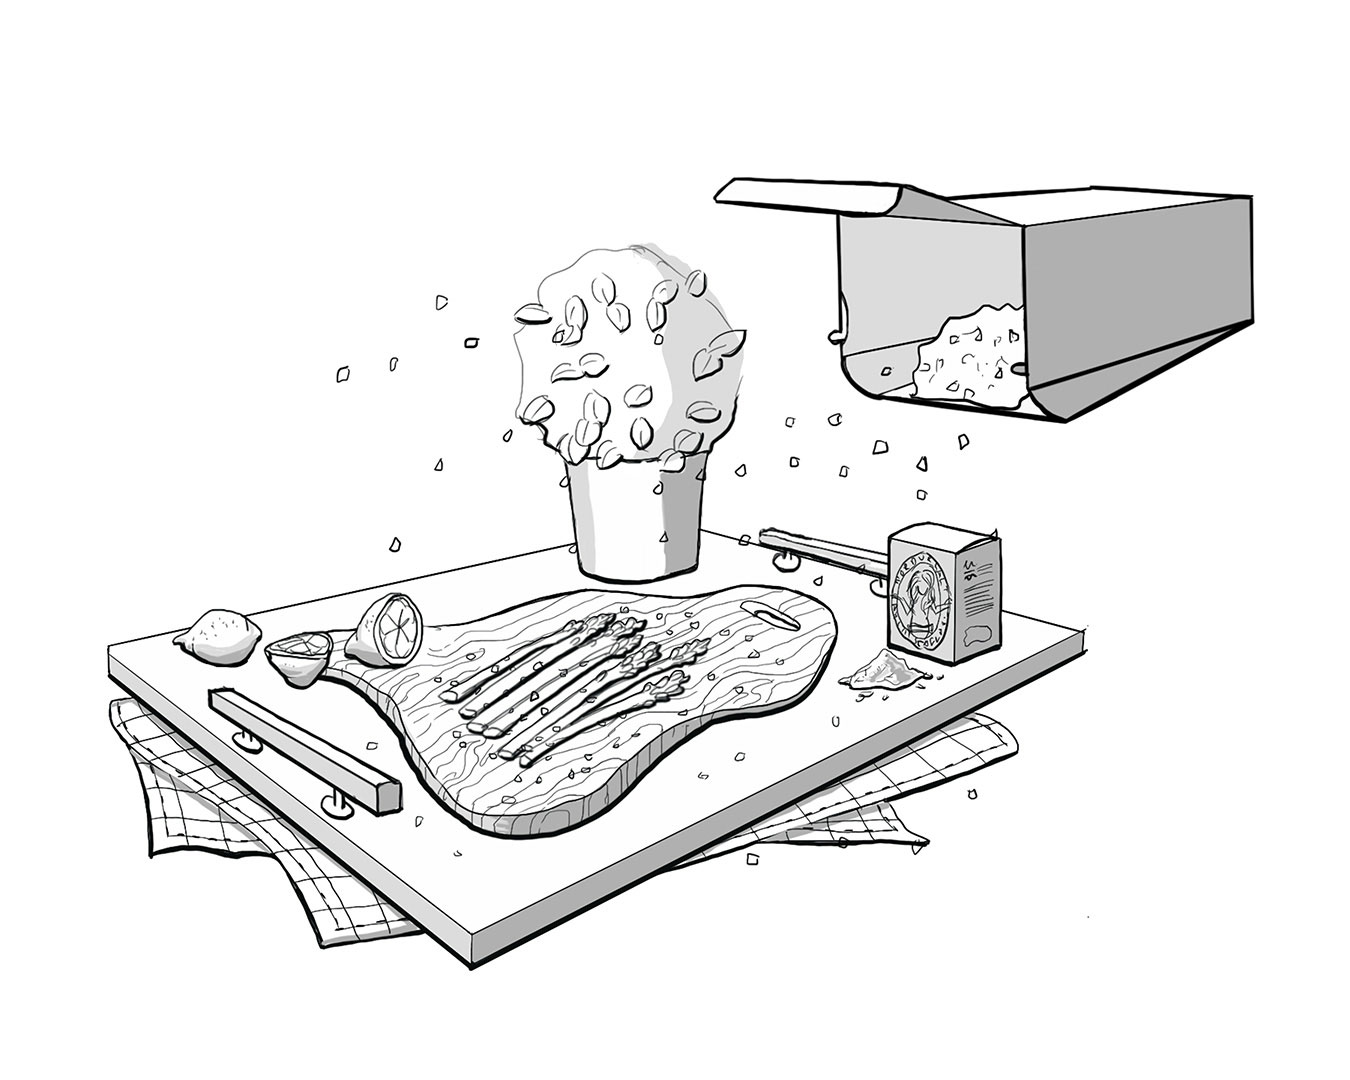 Illustration sketch of kitchen tray